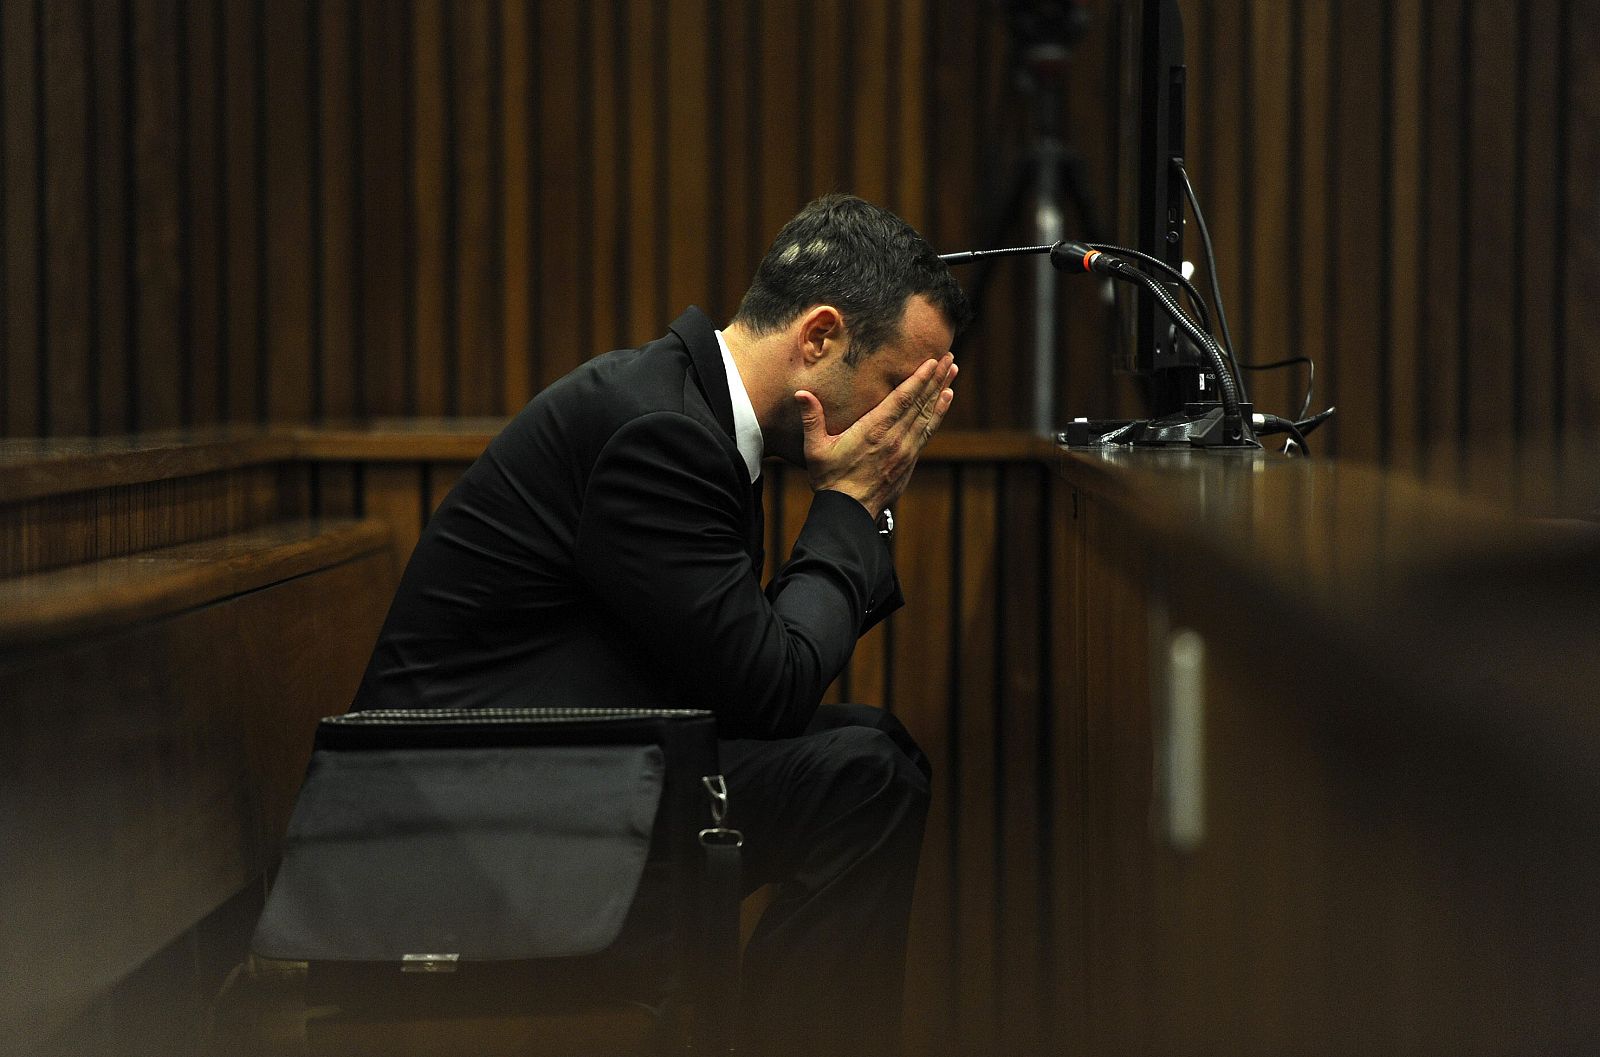 PIstorius en el juzgado durante el proceso judicial por el homicidio de su novia.